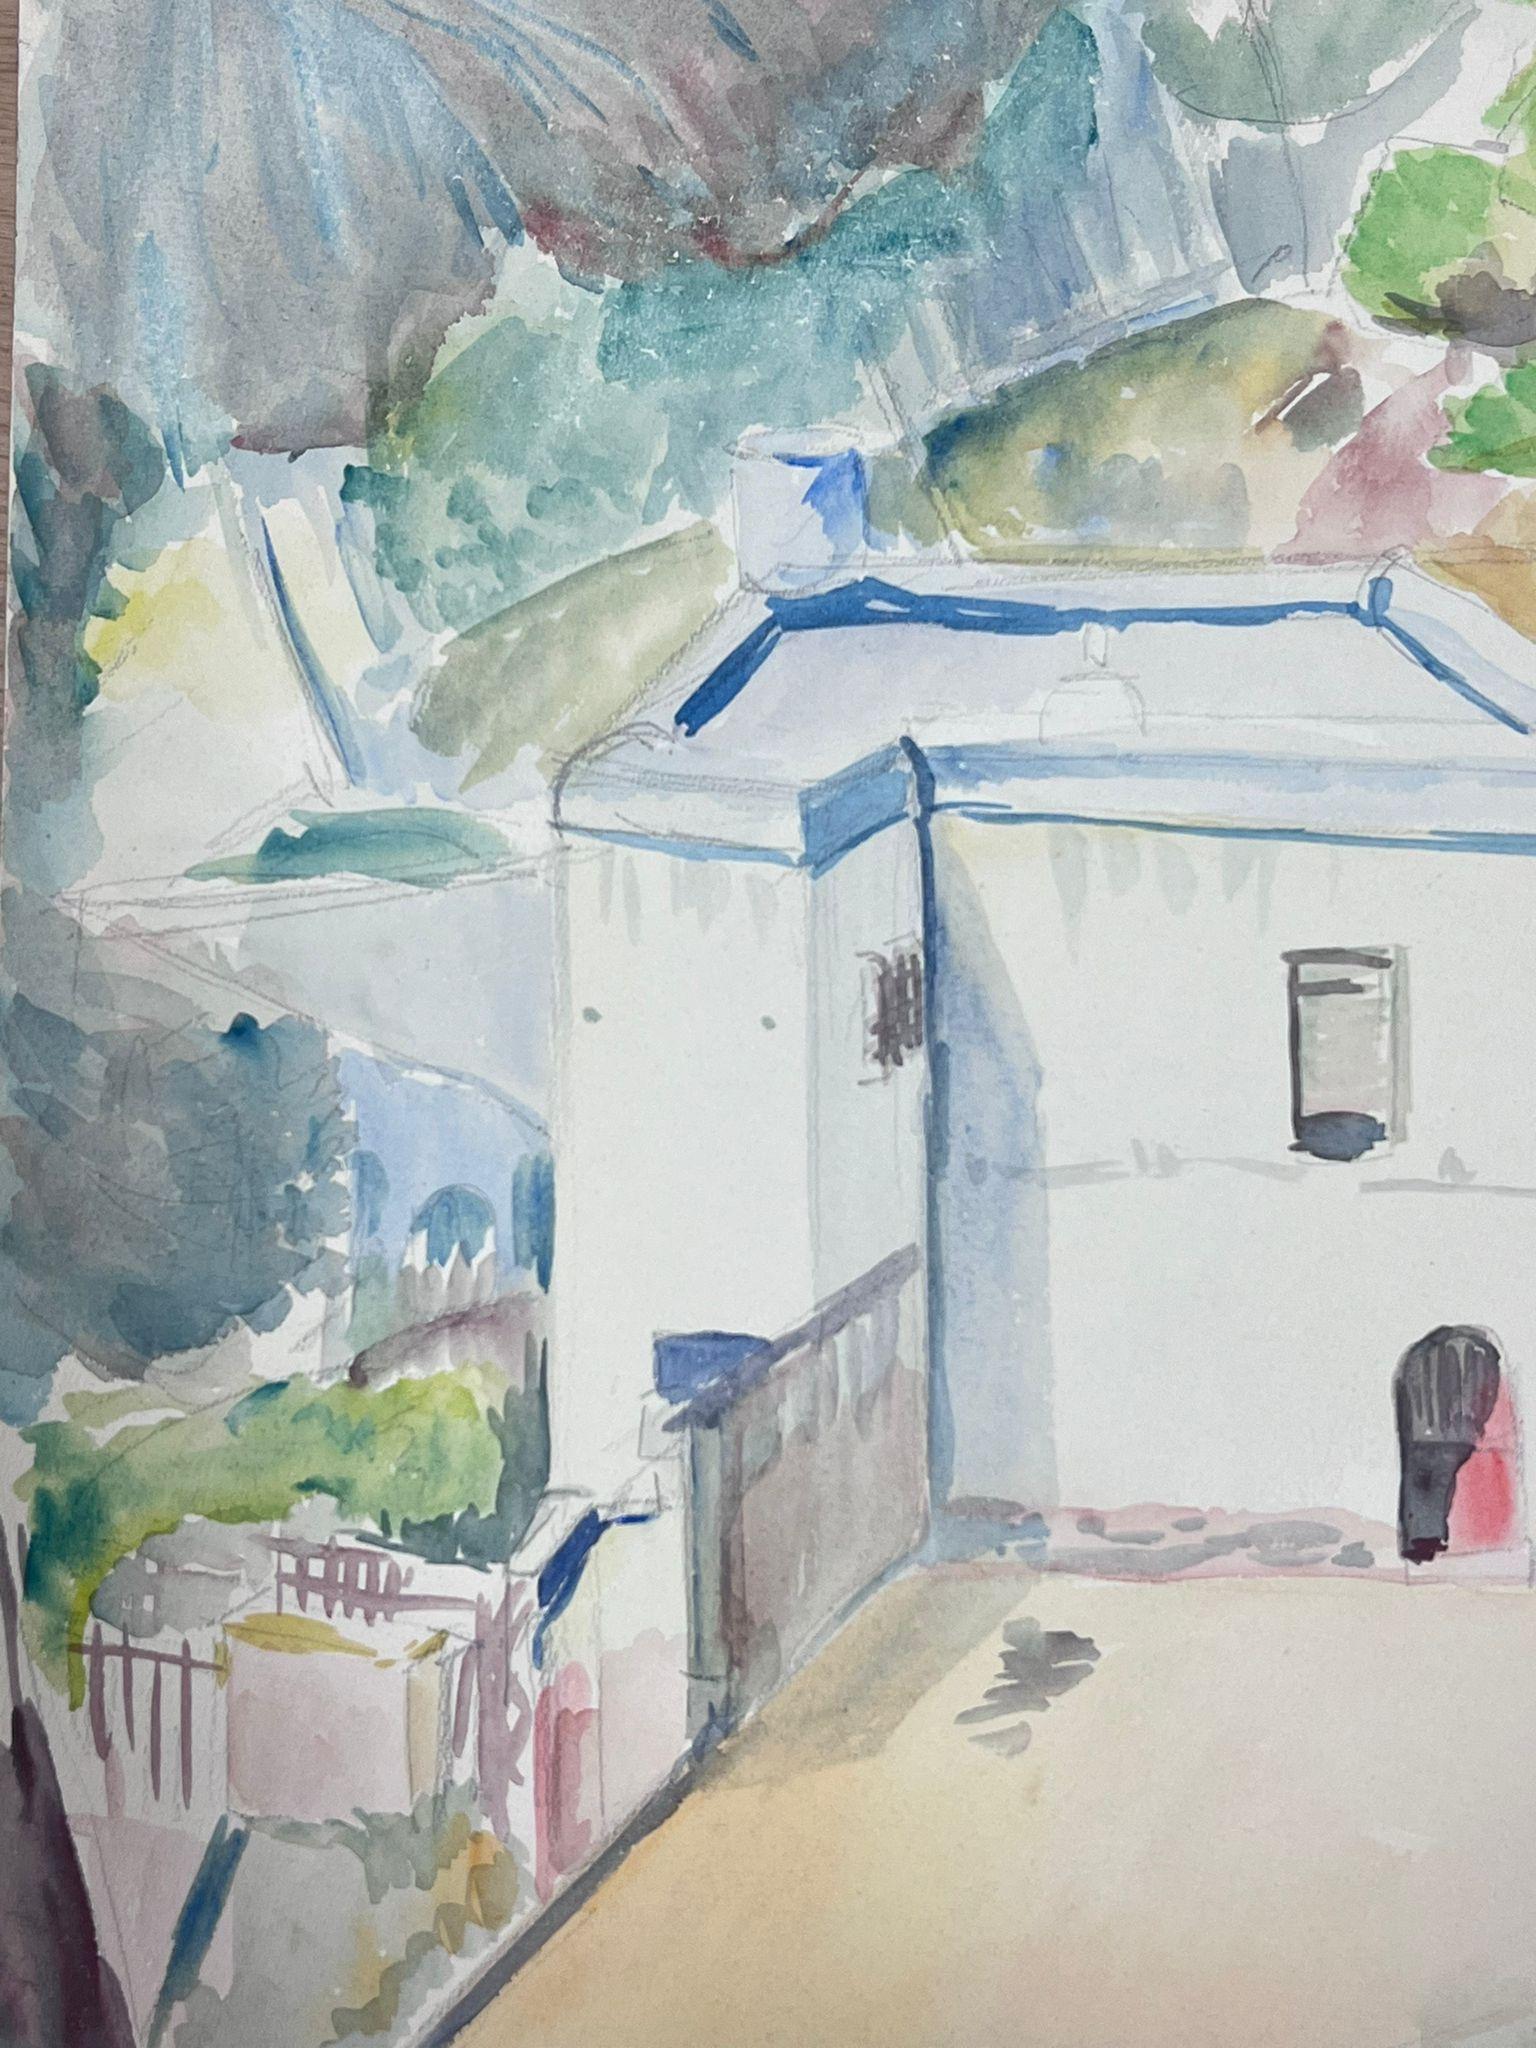 Aquarelle post-impressionniste française du milieu du 20e siècle représentant un château blanc provençal - Painting de Guy Nicod